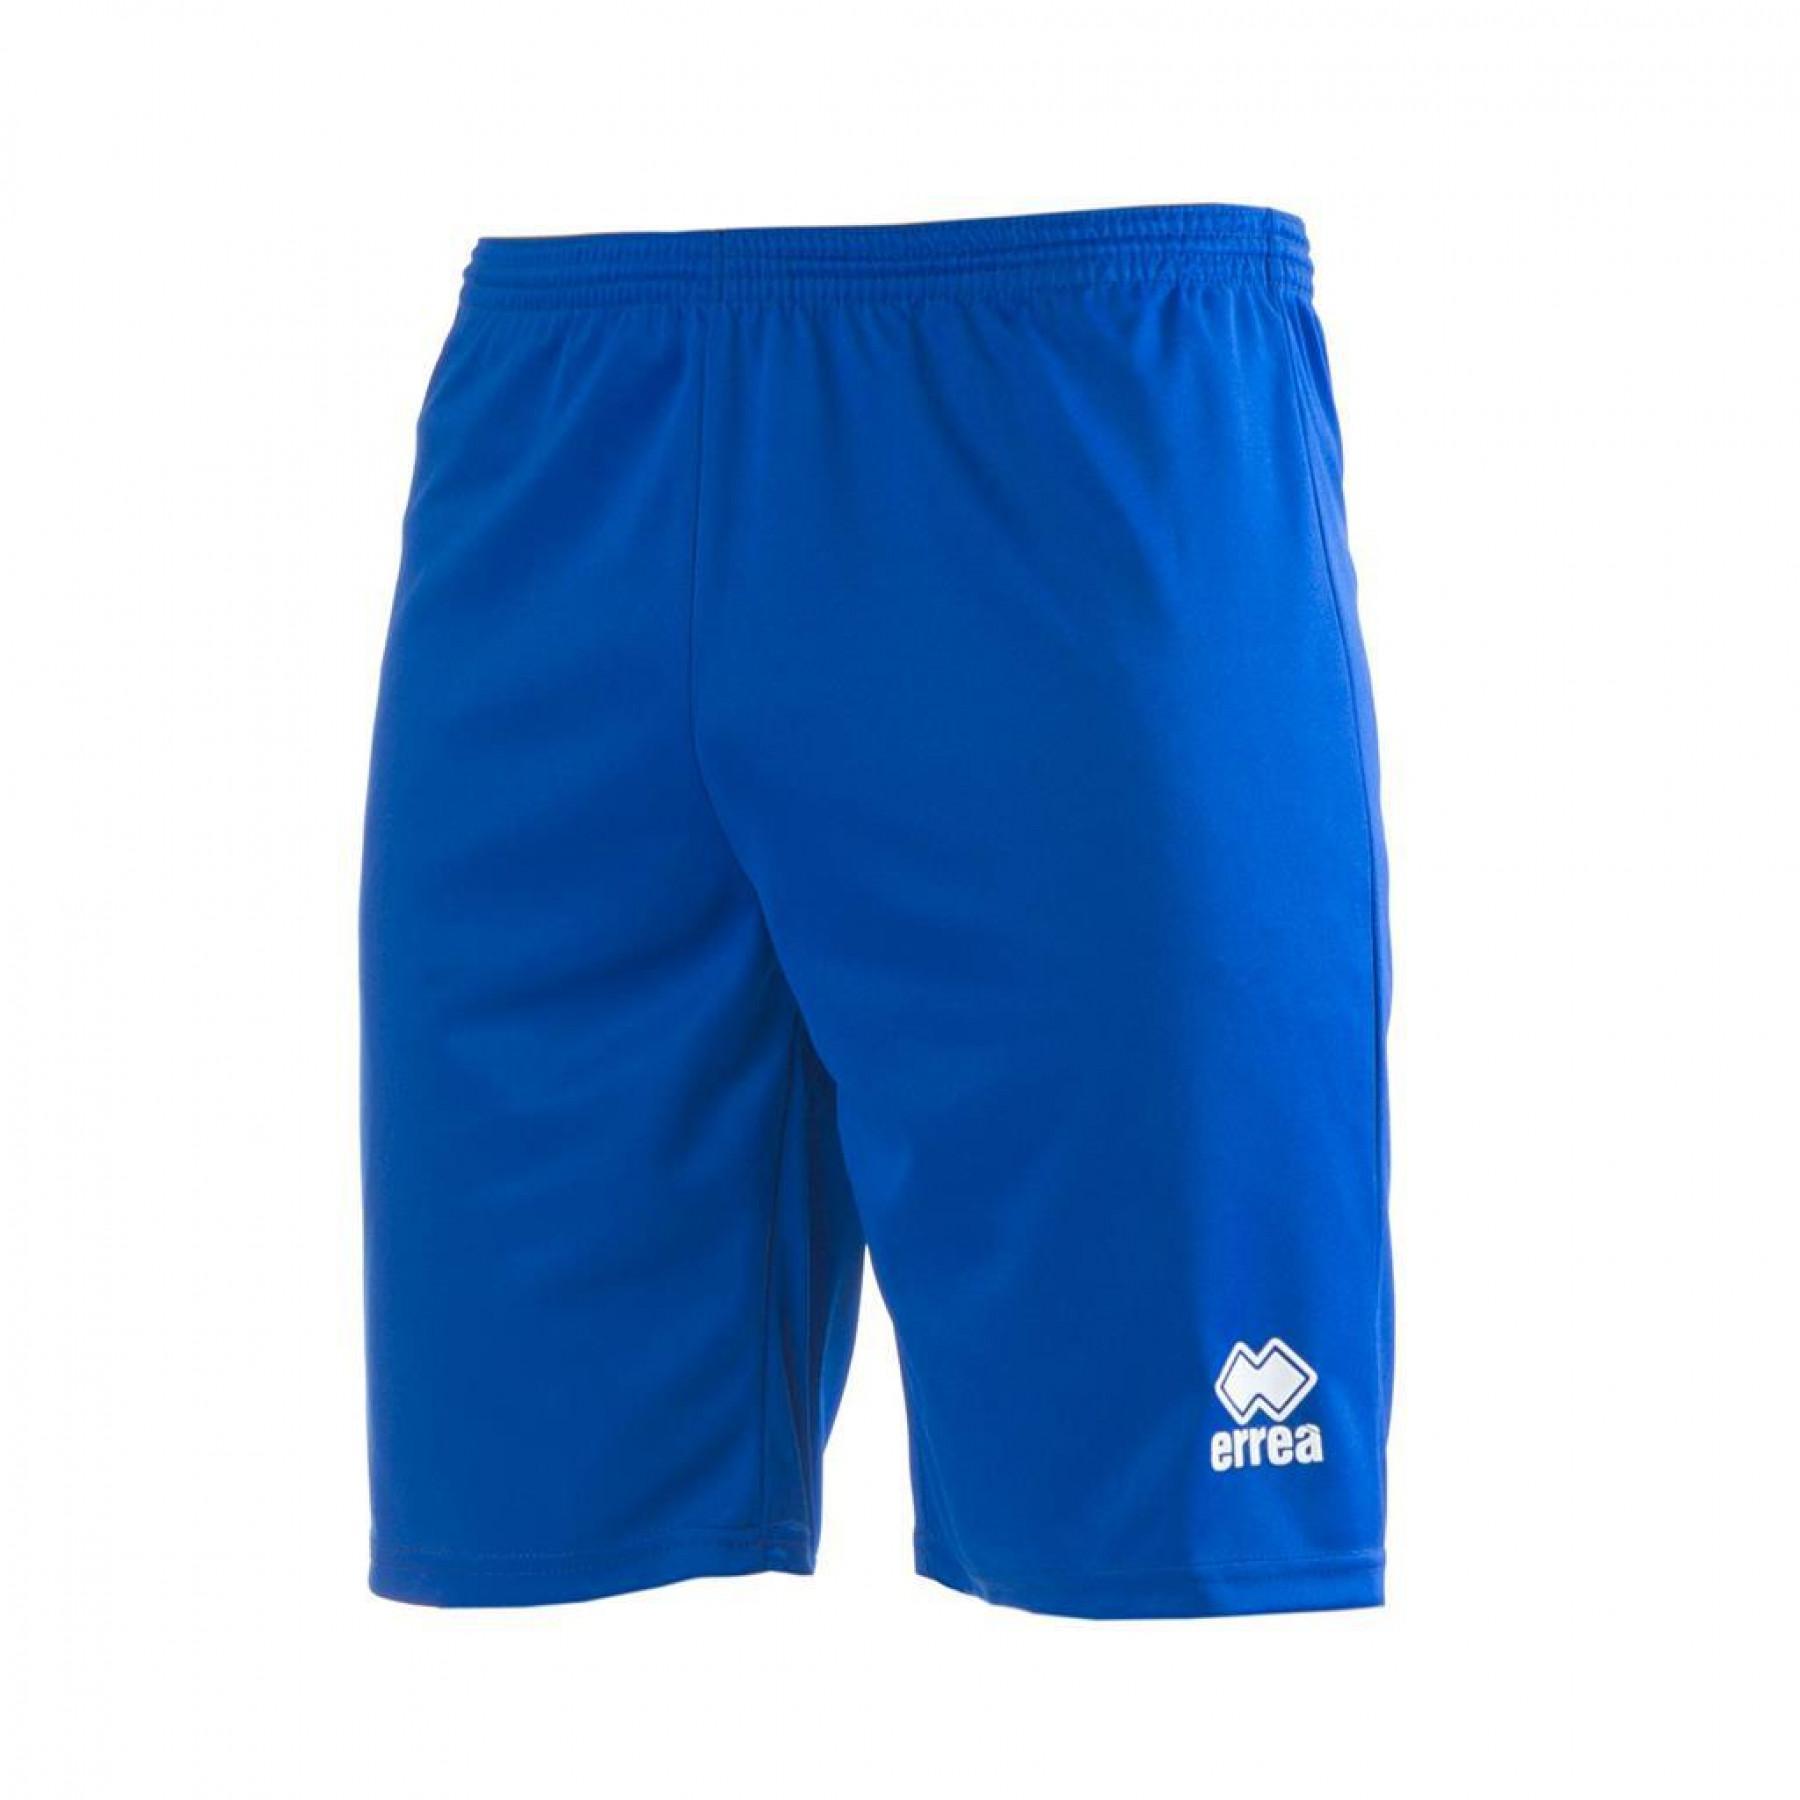 Bermuda shorts Errea Maxi Skin